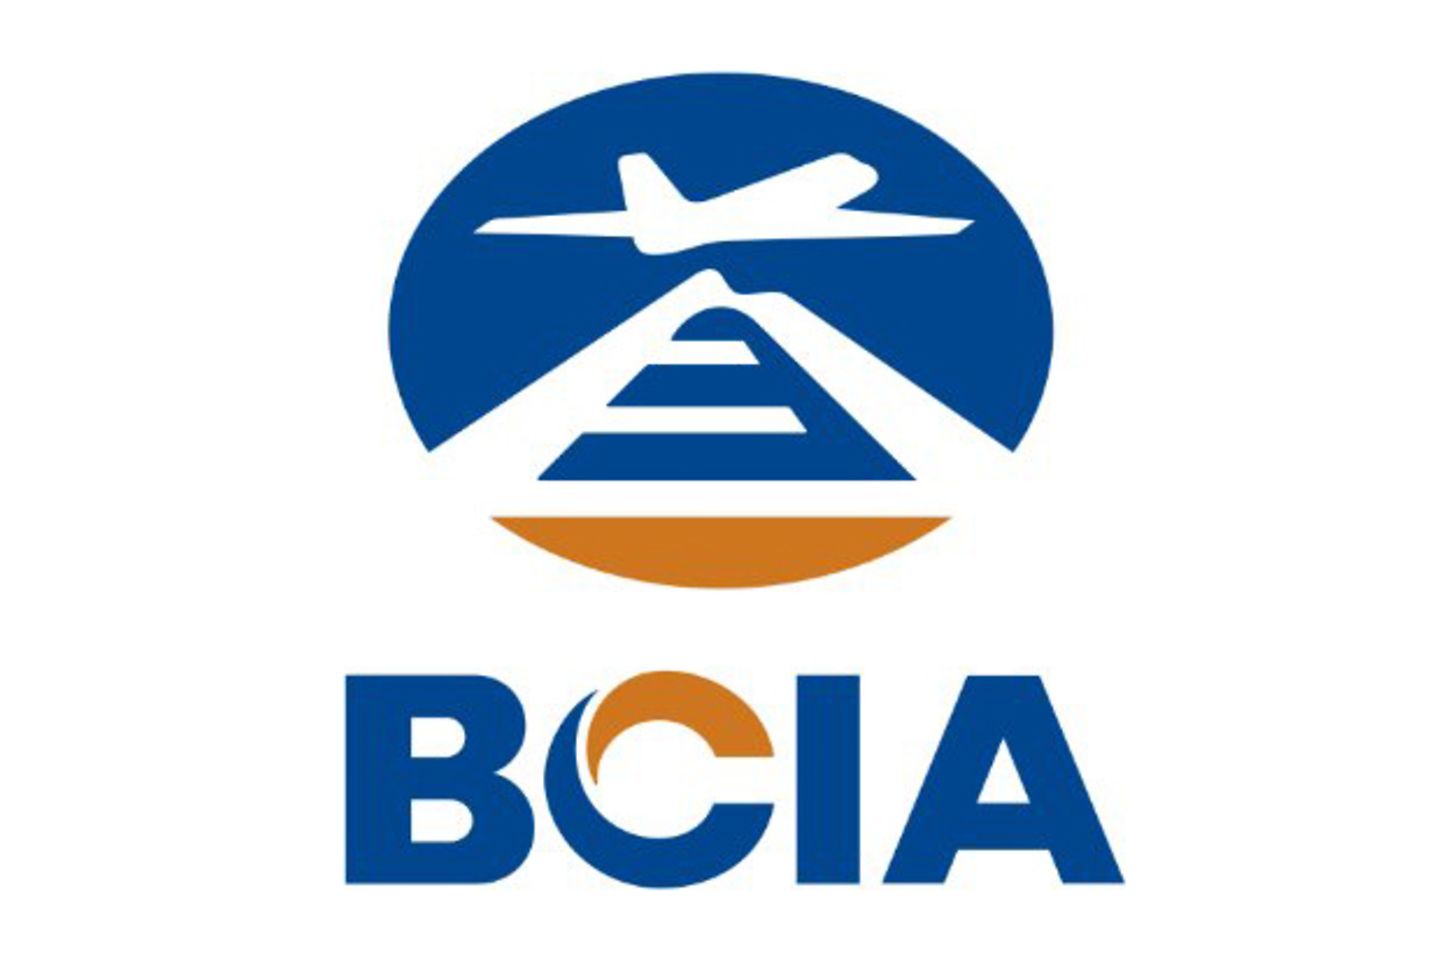 Logotipo oficial del aeropuerto de Pekín